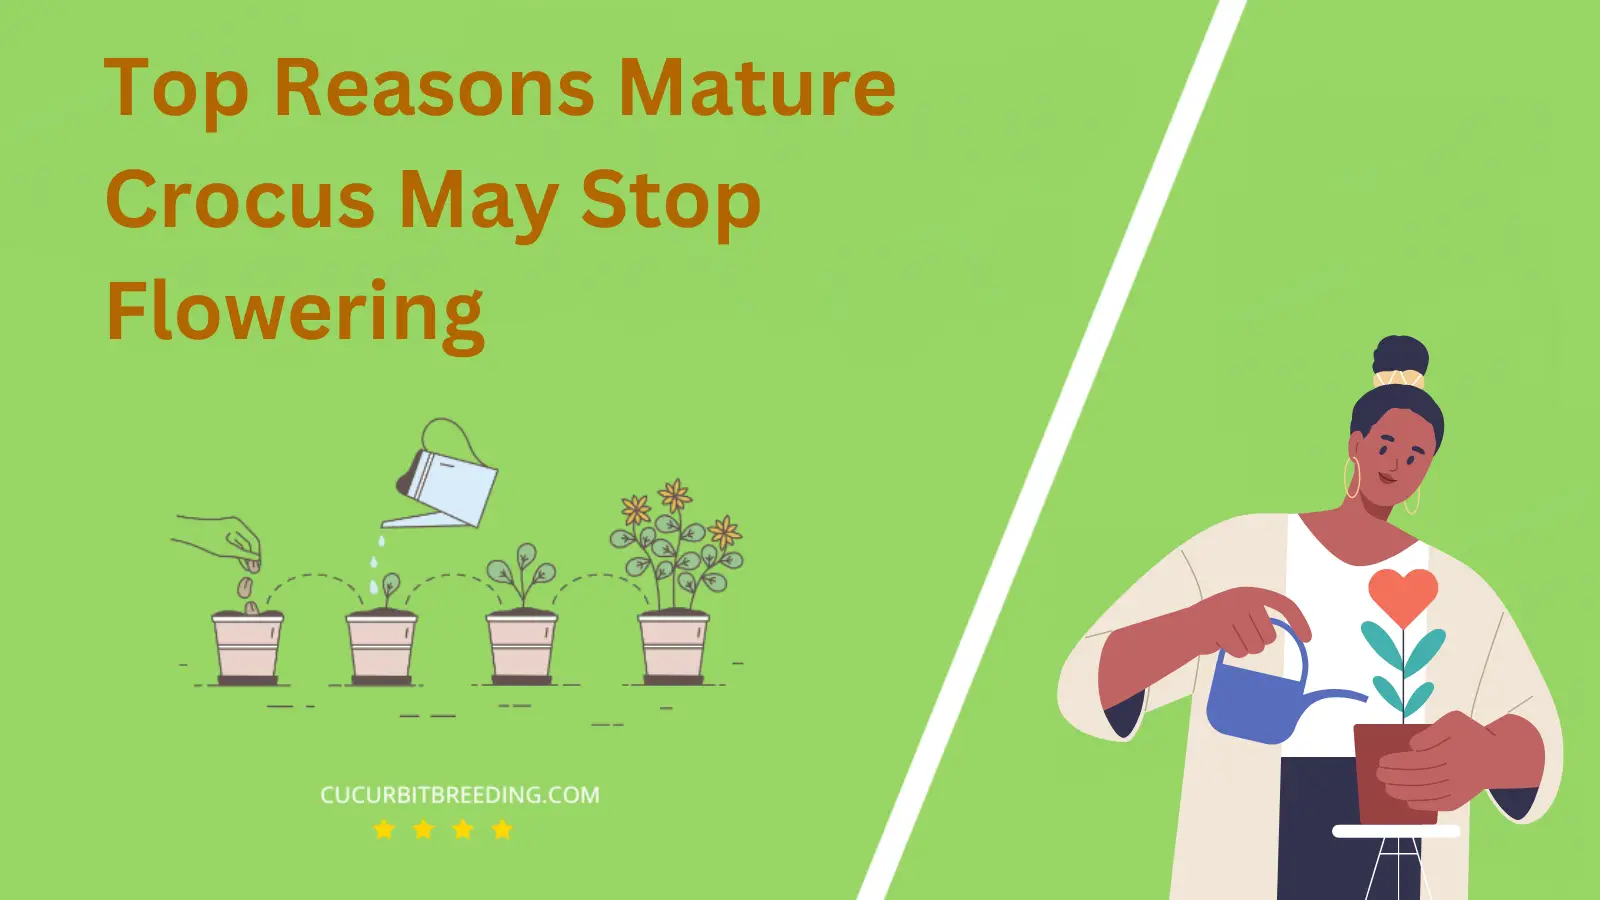 Top Reasons Mature Crocus May Stop Flowering